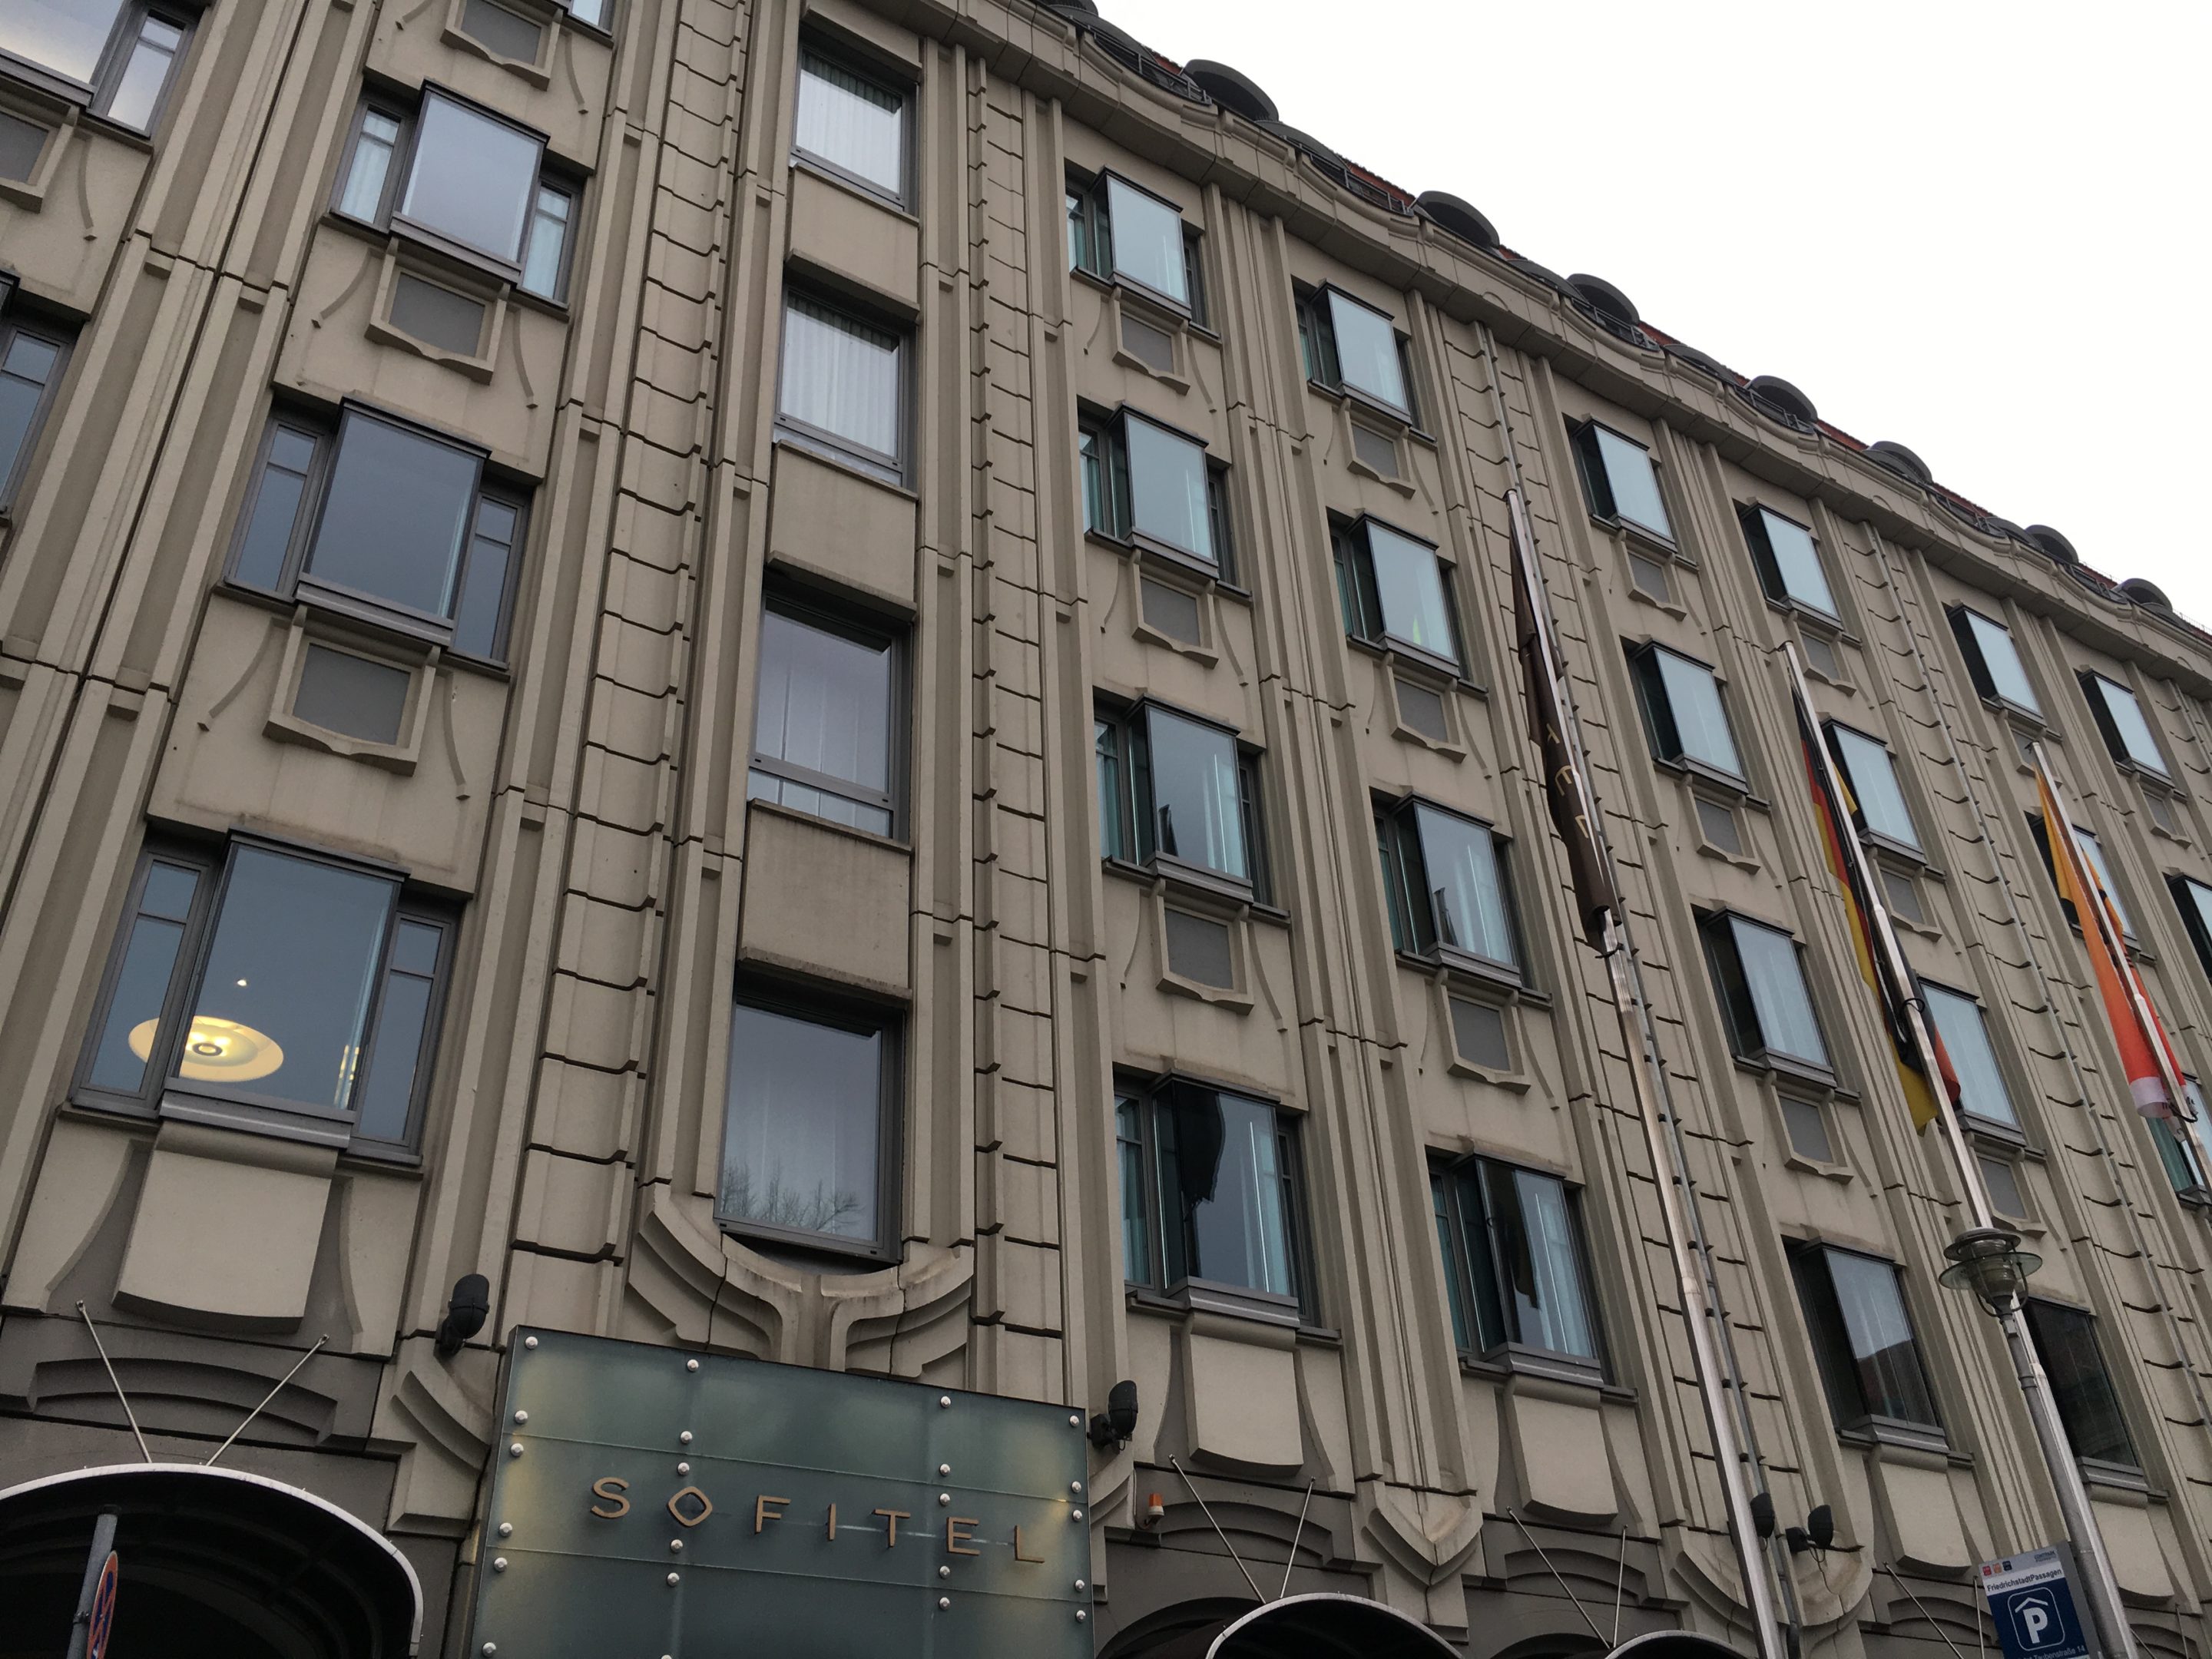 		Accor Hotels Herbstangebote 2018 mit bis zu 30% Rabatt
	